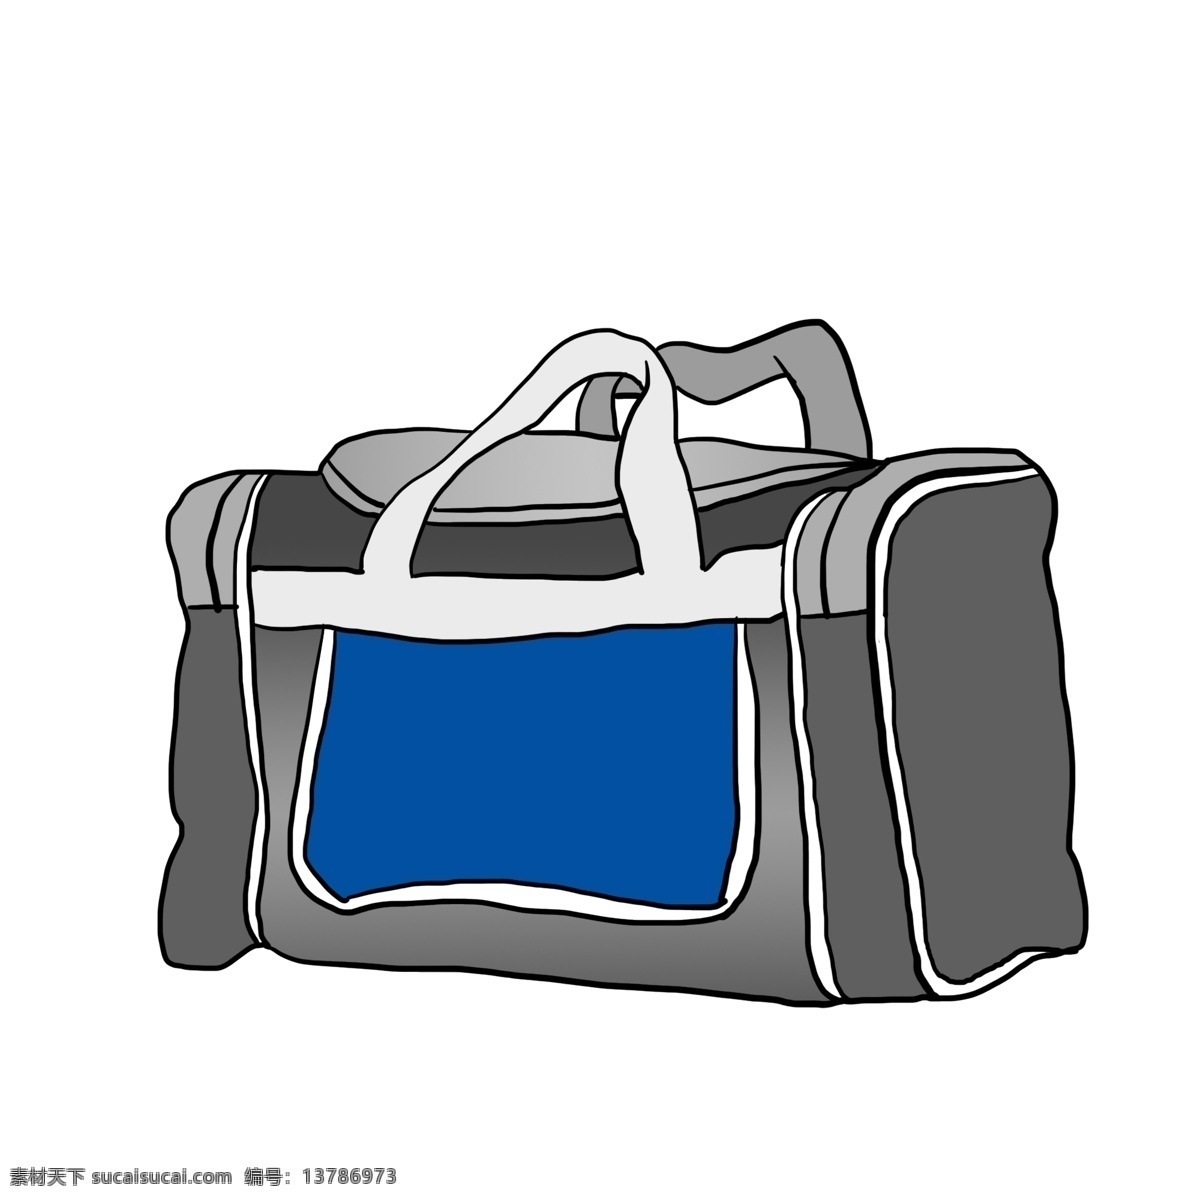 灰 蓝色 行李箱 插画 行李包 手绘行李箱 旅行包 旅游 灰蓝色行李箱 大手提包插画 箱子出差 帆布手提包